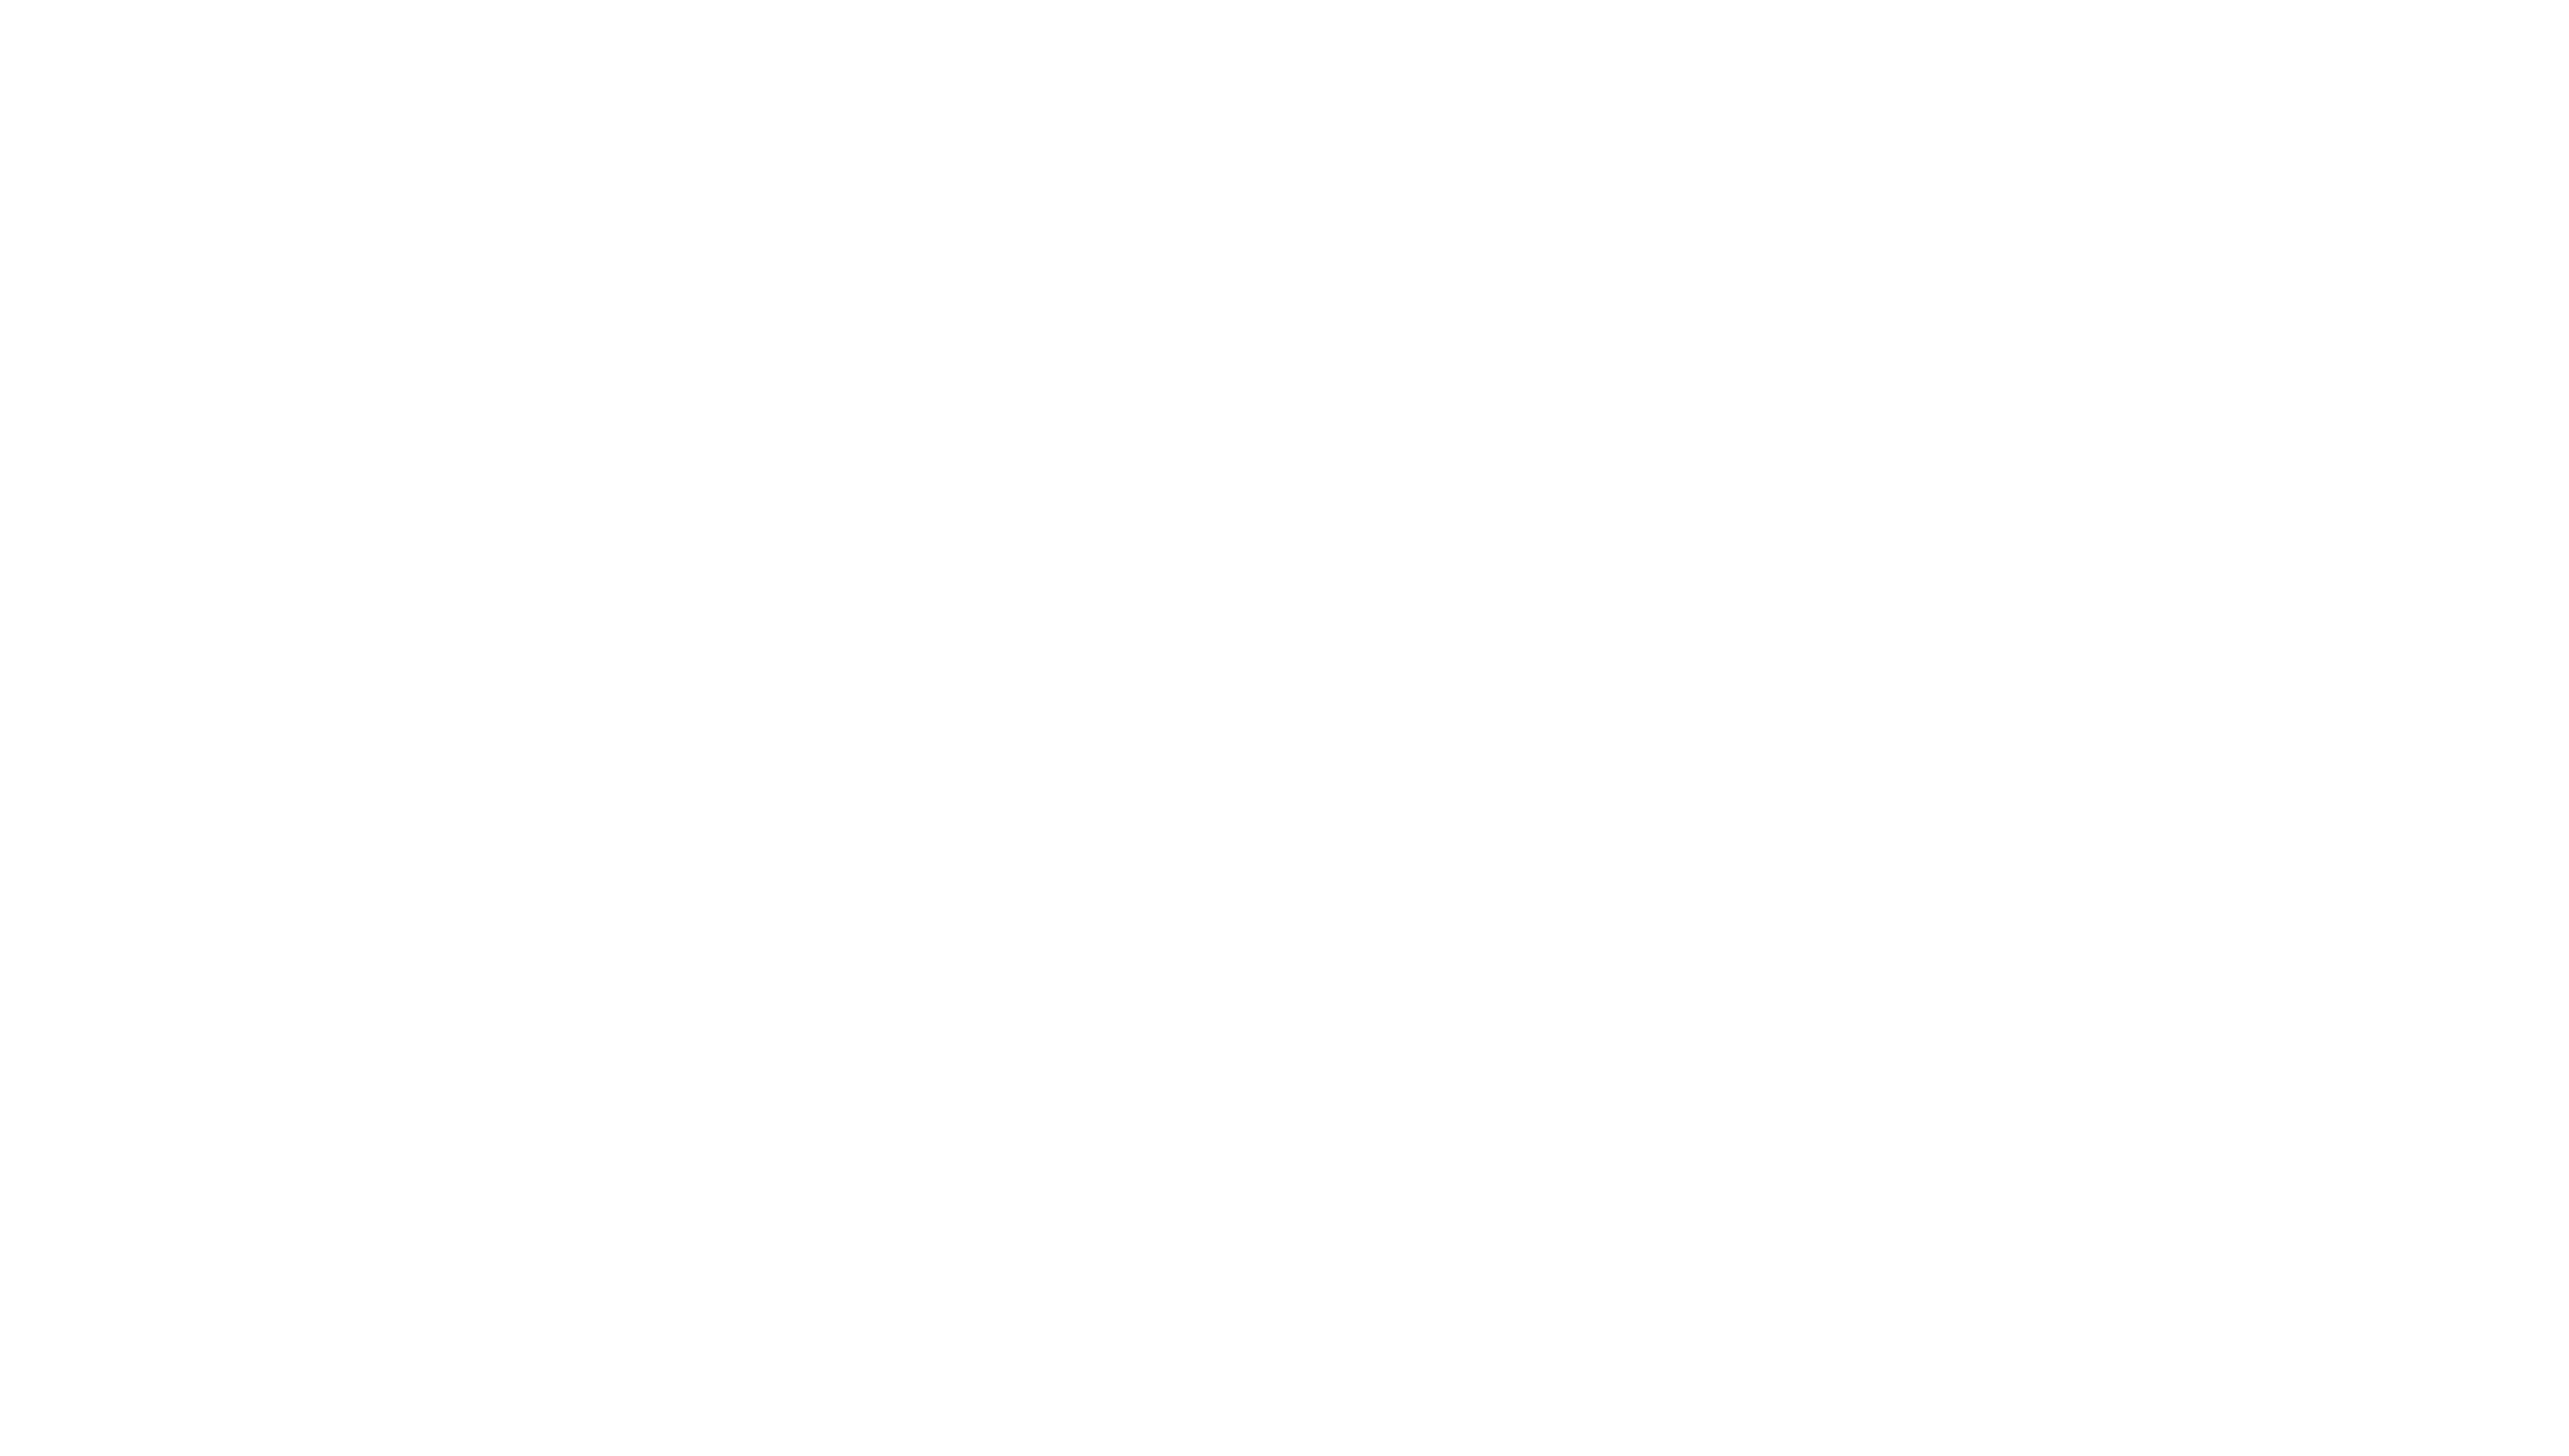 Slashley Photography